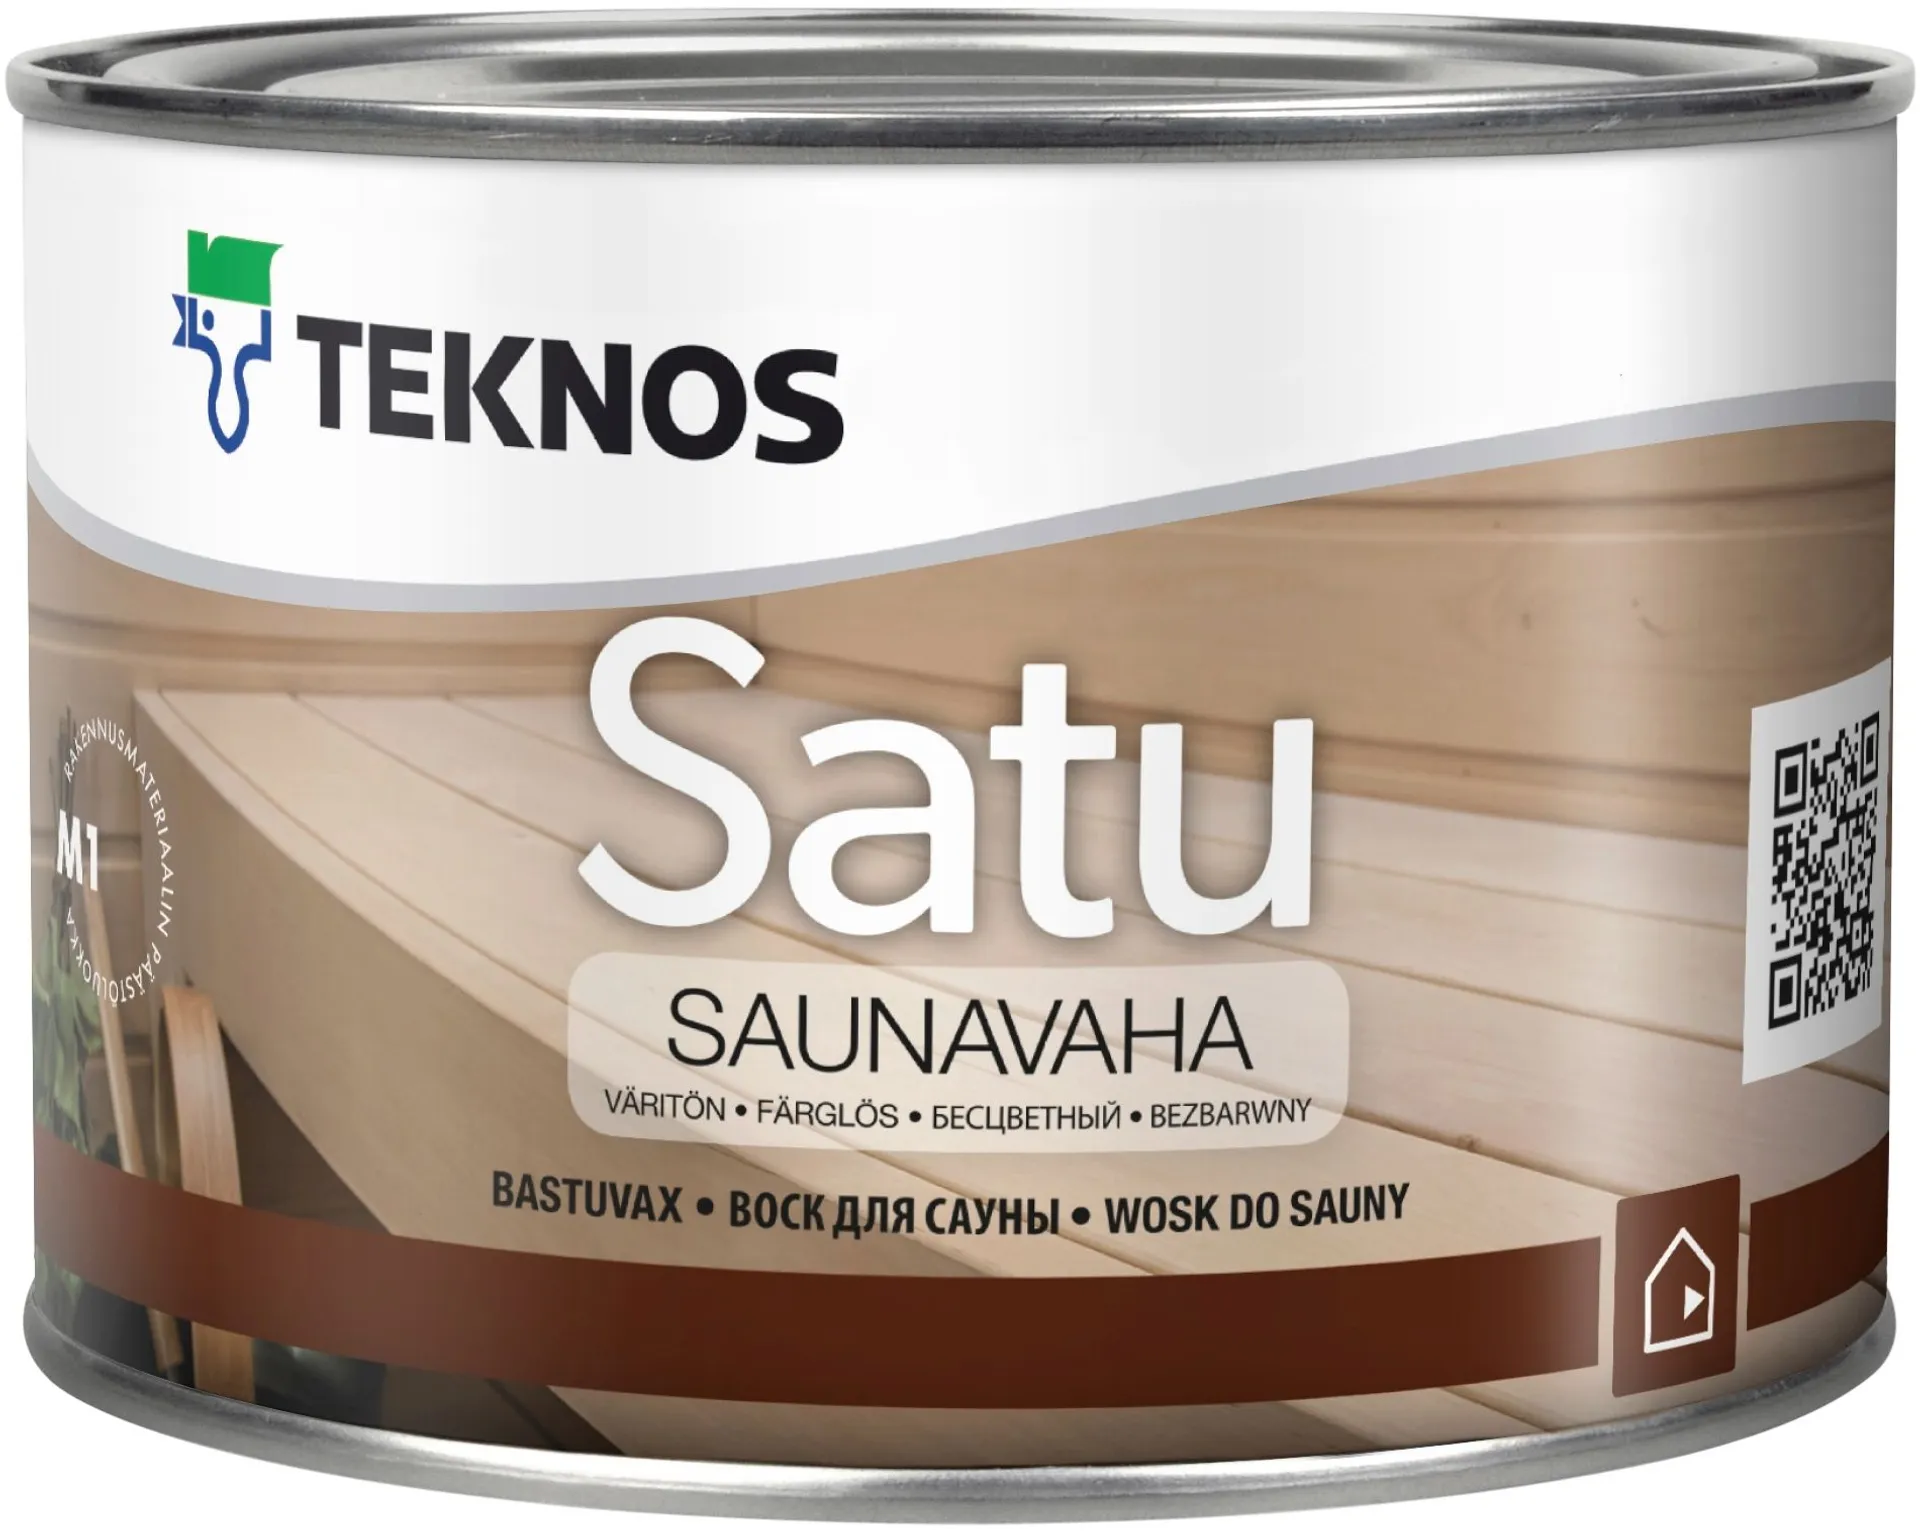 Teknos saunavaha Satu 0,45 l väritön sävytettävissä